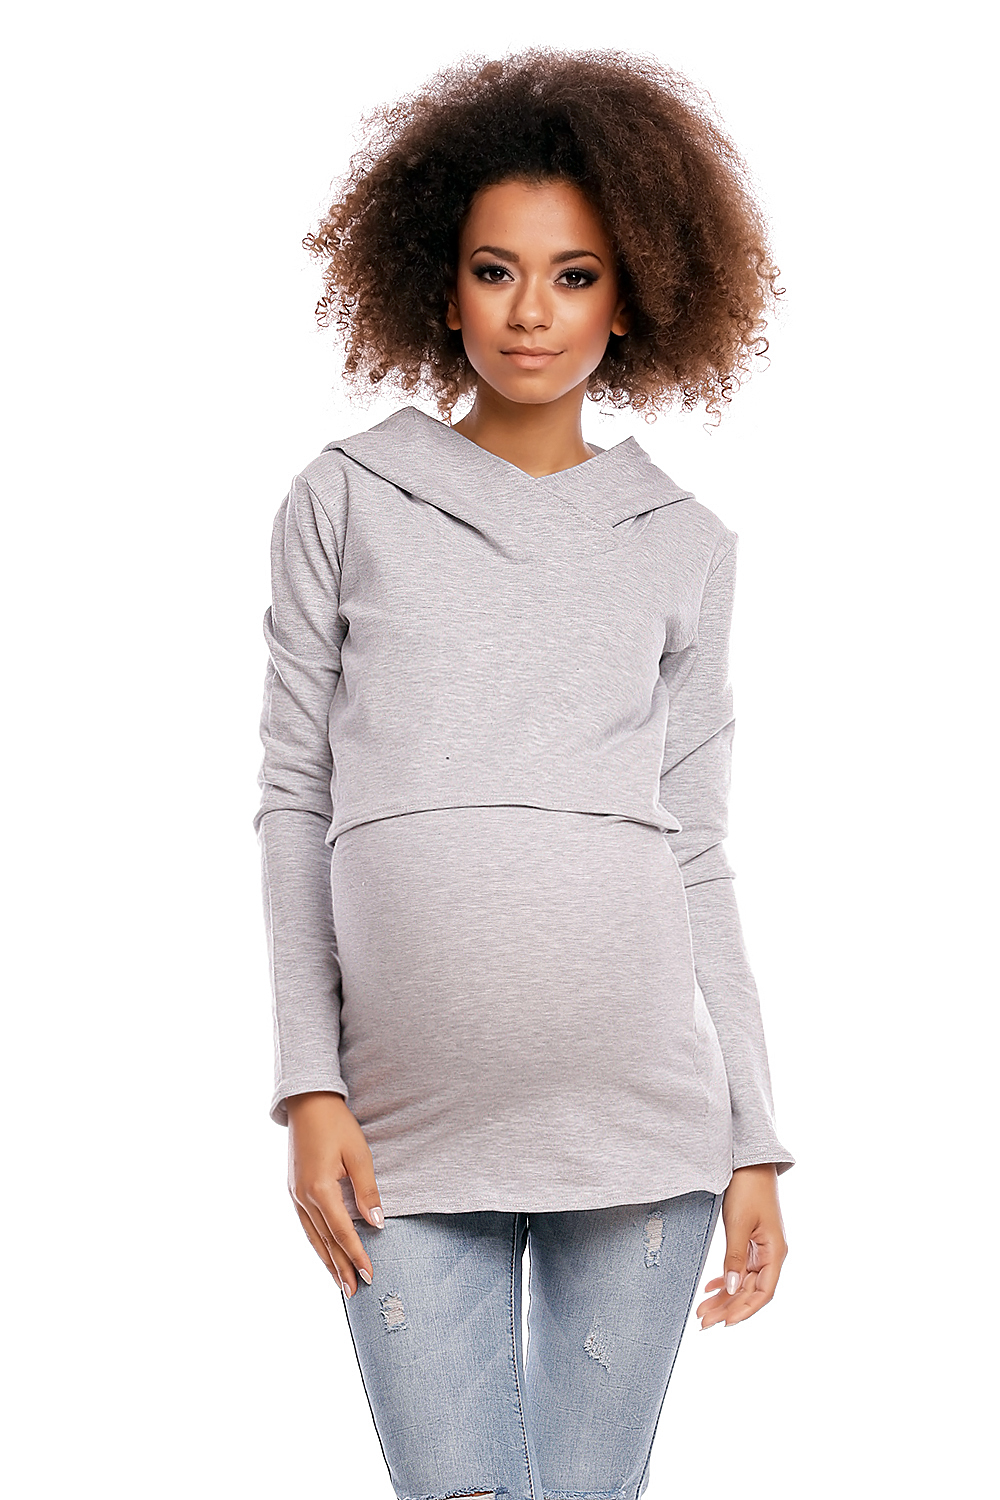 Maternity sweatshirt model 844..